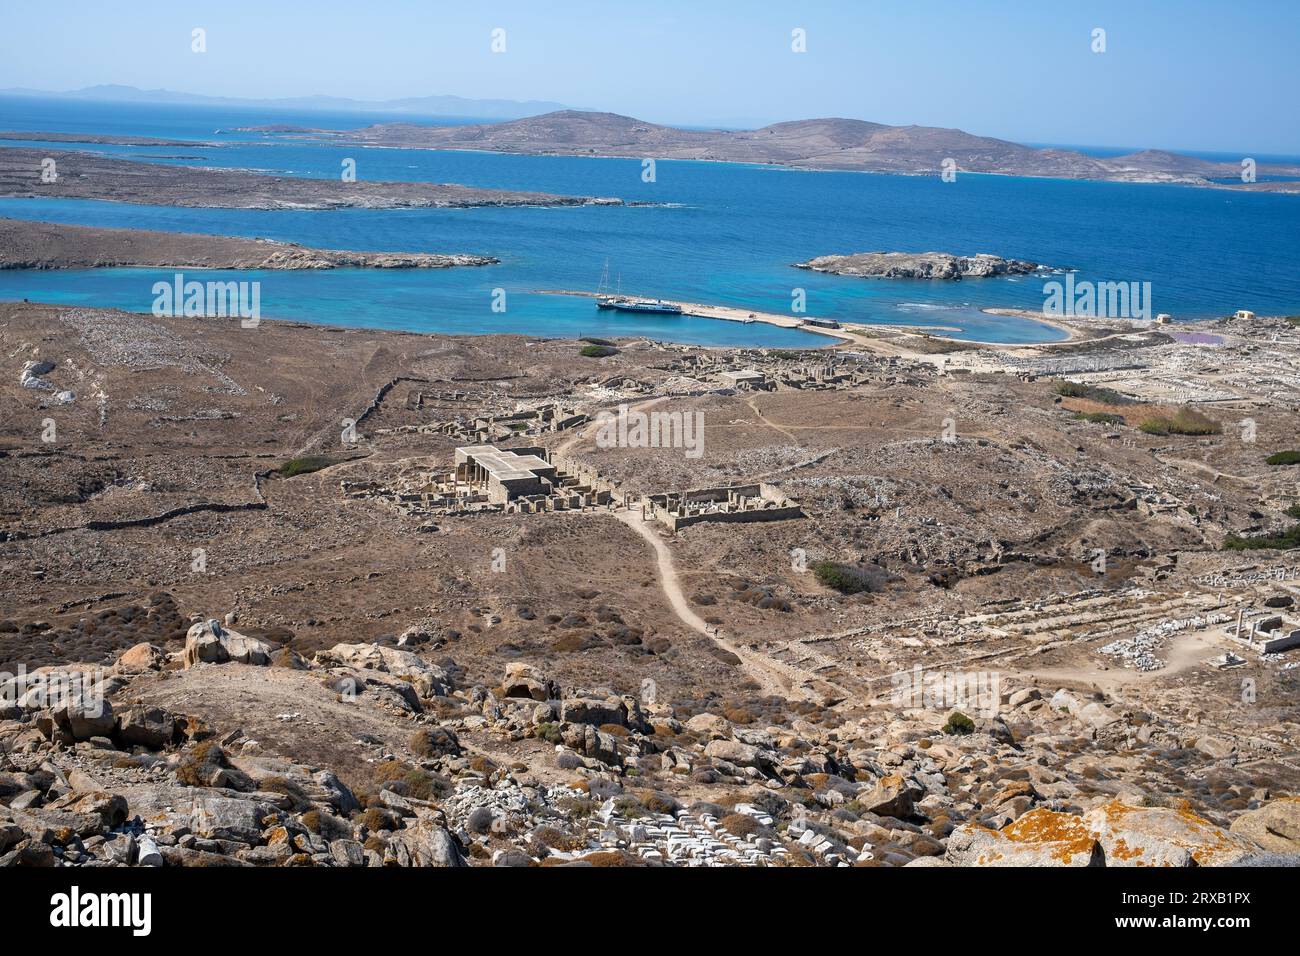 Delos est une île grecque et un site archéologique dans l'archipel des Cyclades de la mer Égée, près de Mykonos. Banque D'Images